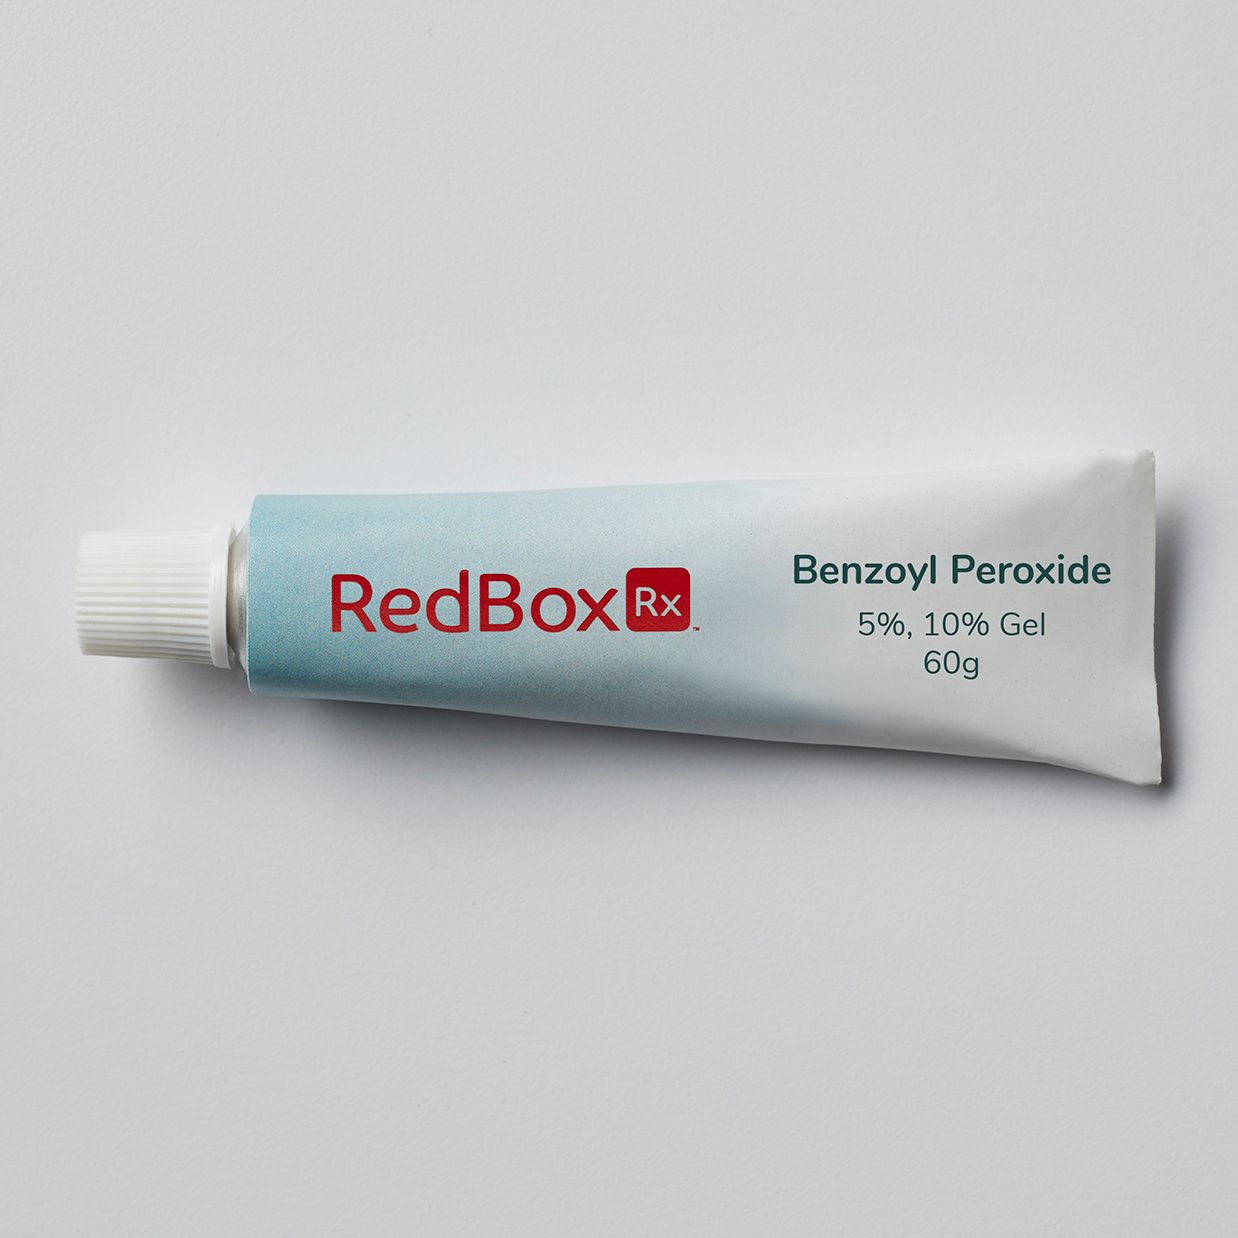 RedBox Rx Benzoyl Peroxide Tube